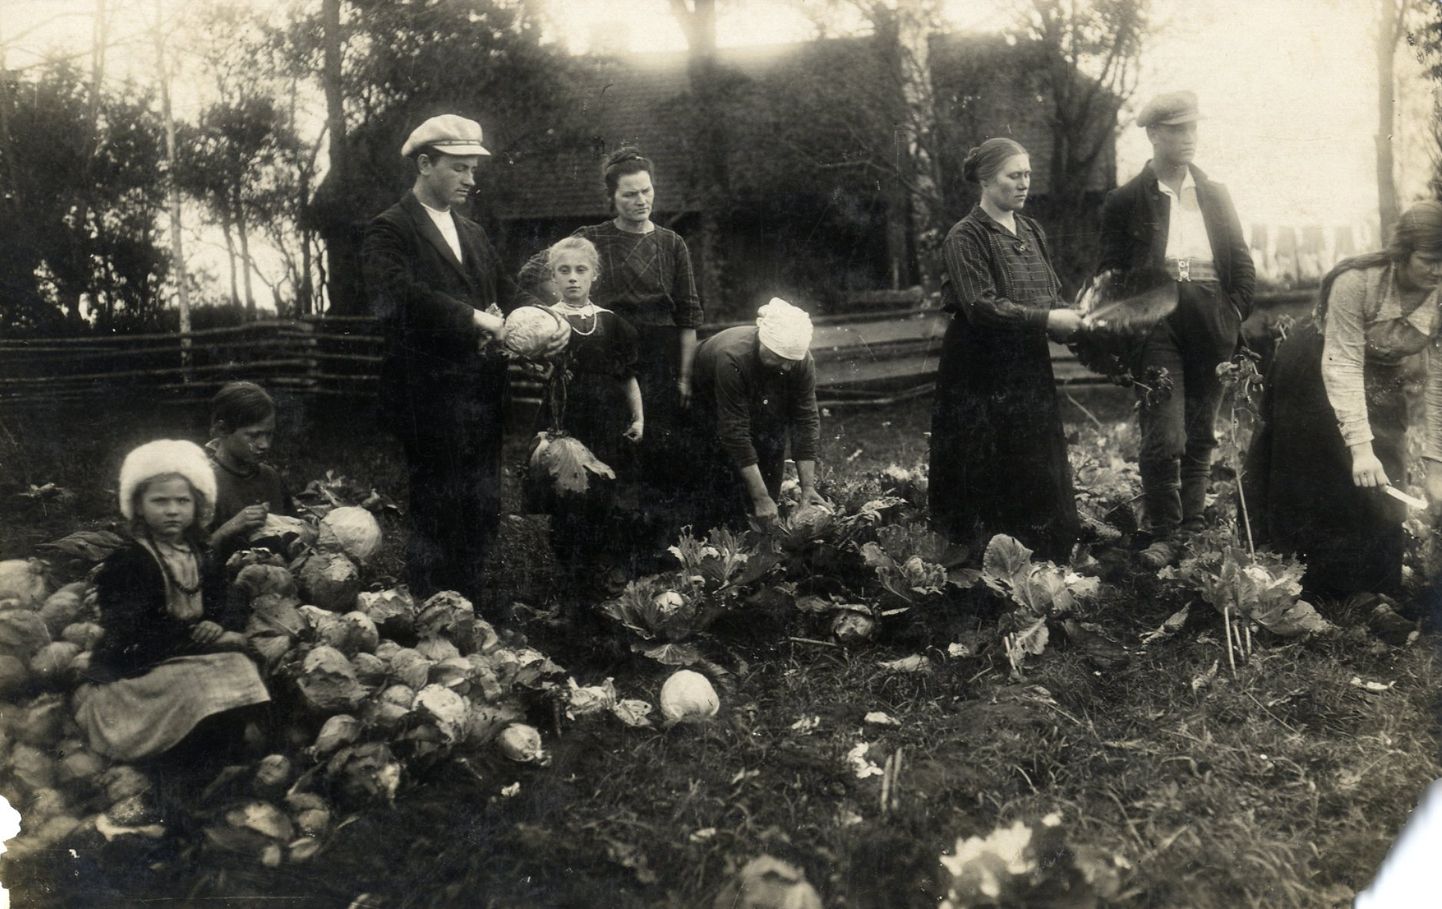 Lauku darbi kopā ar bērniem “Vārniņās” pie Tārgales 1920-30tie.